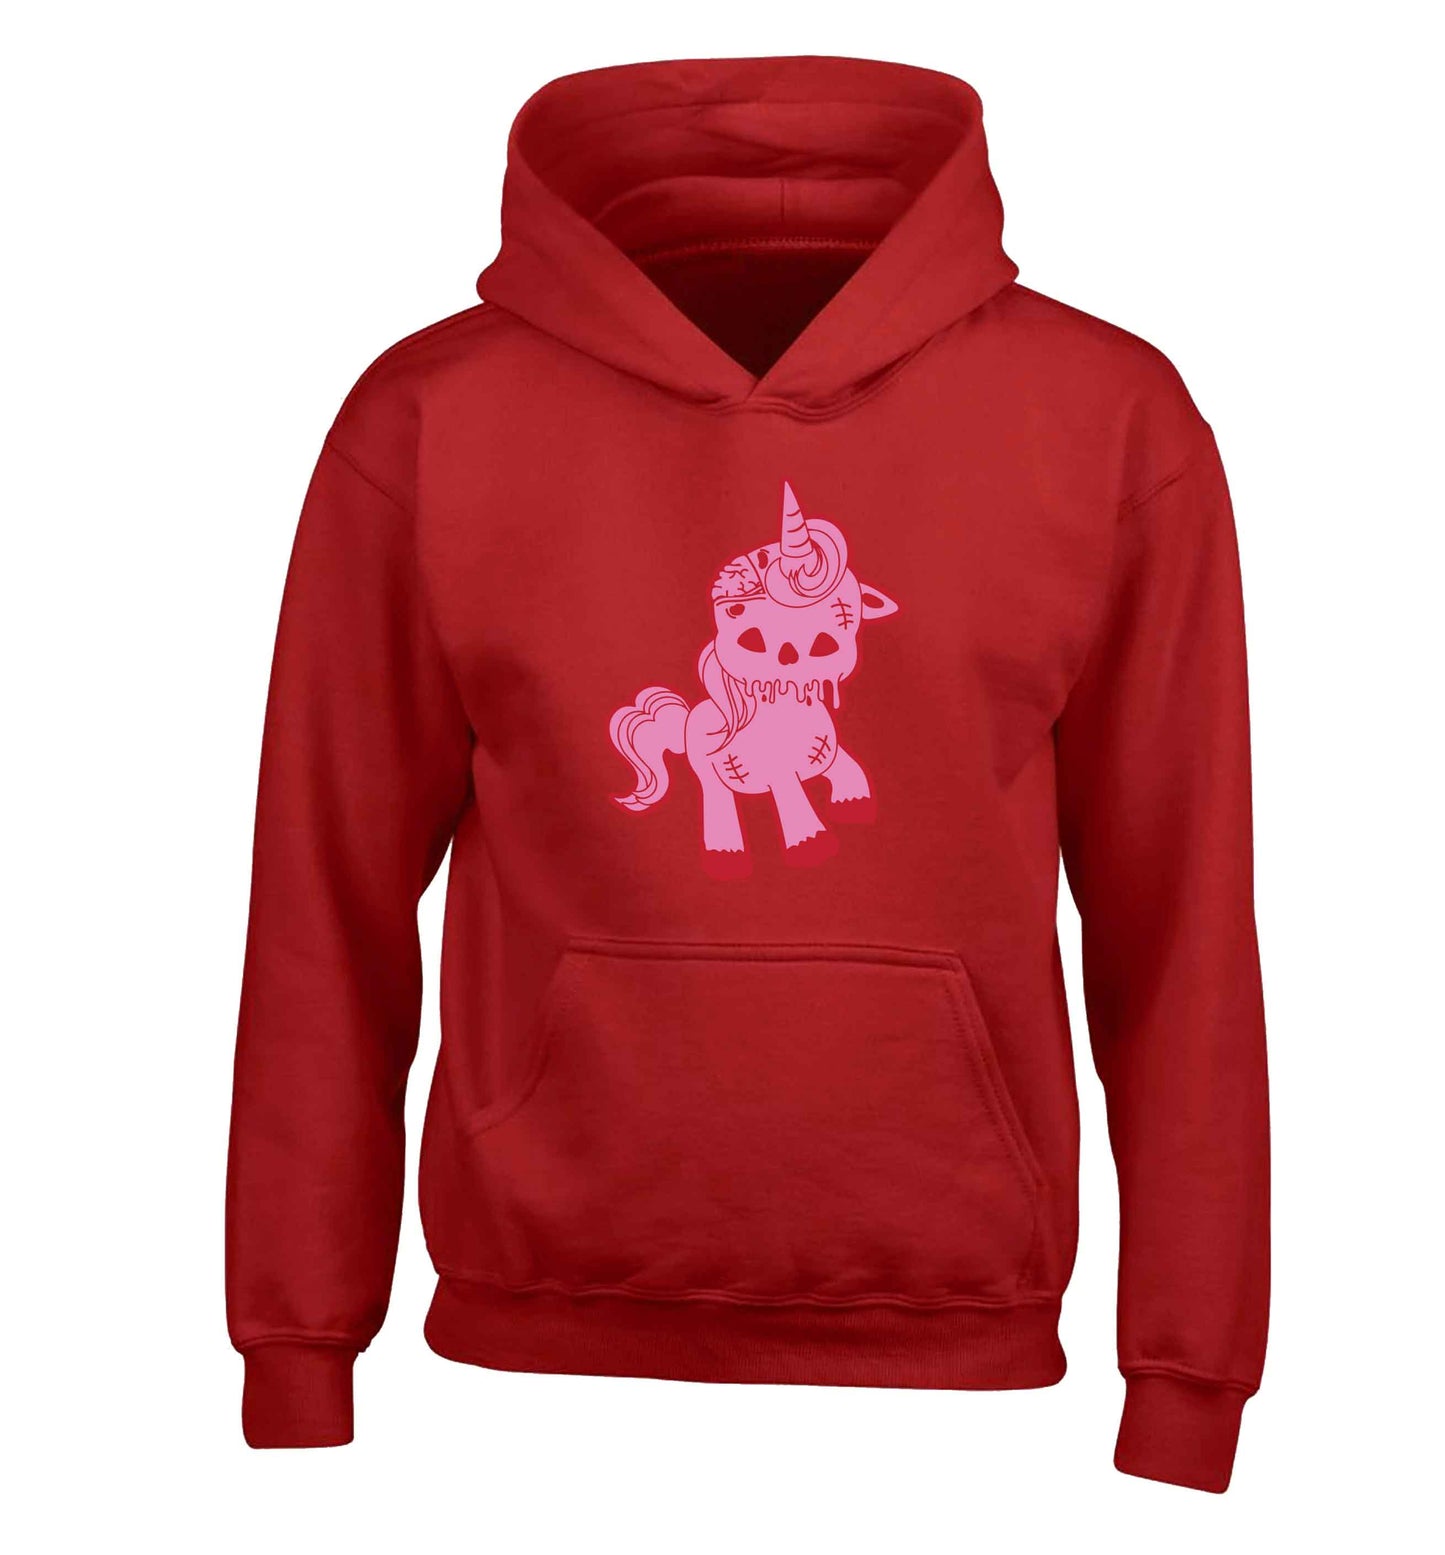 Zombie unicorn zombiecorn children's red hoodie 12-13 Years